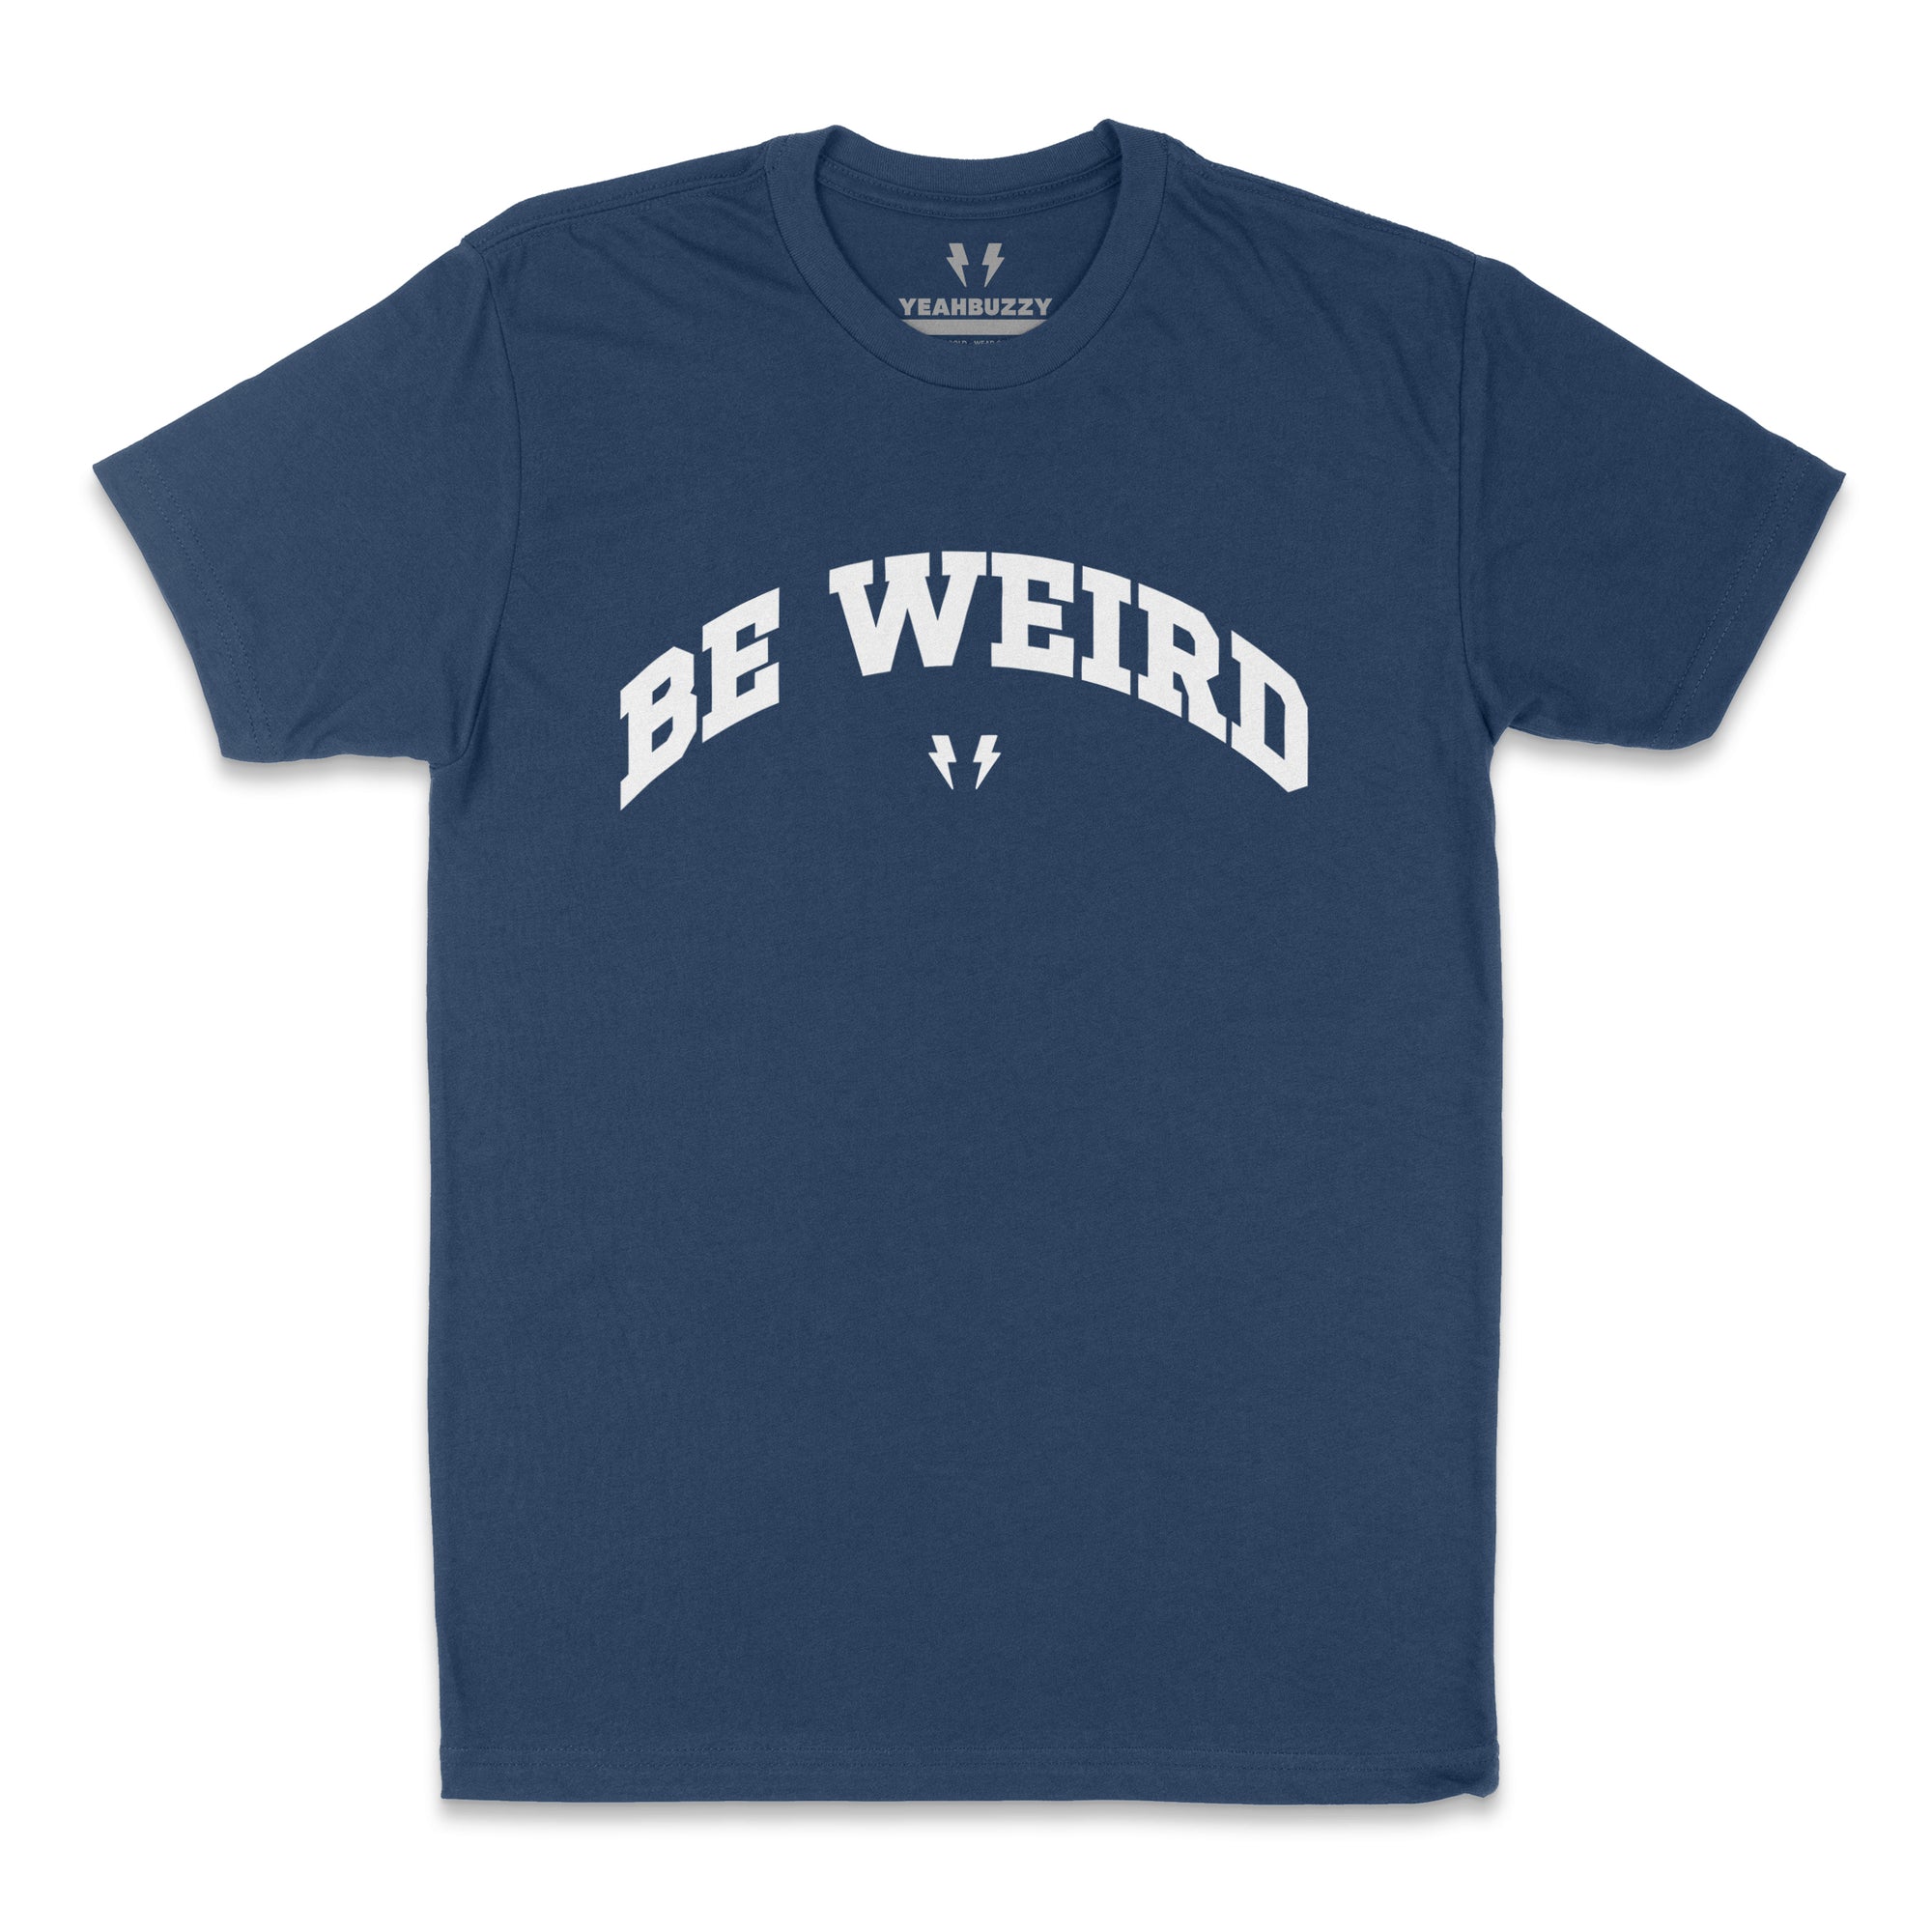 Be Weird Tee